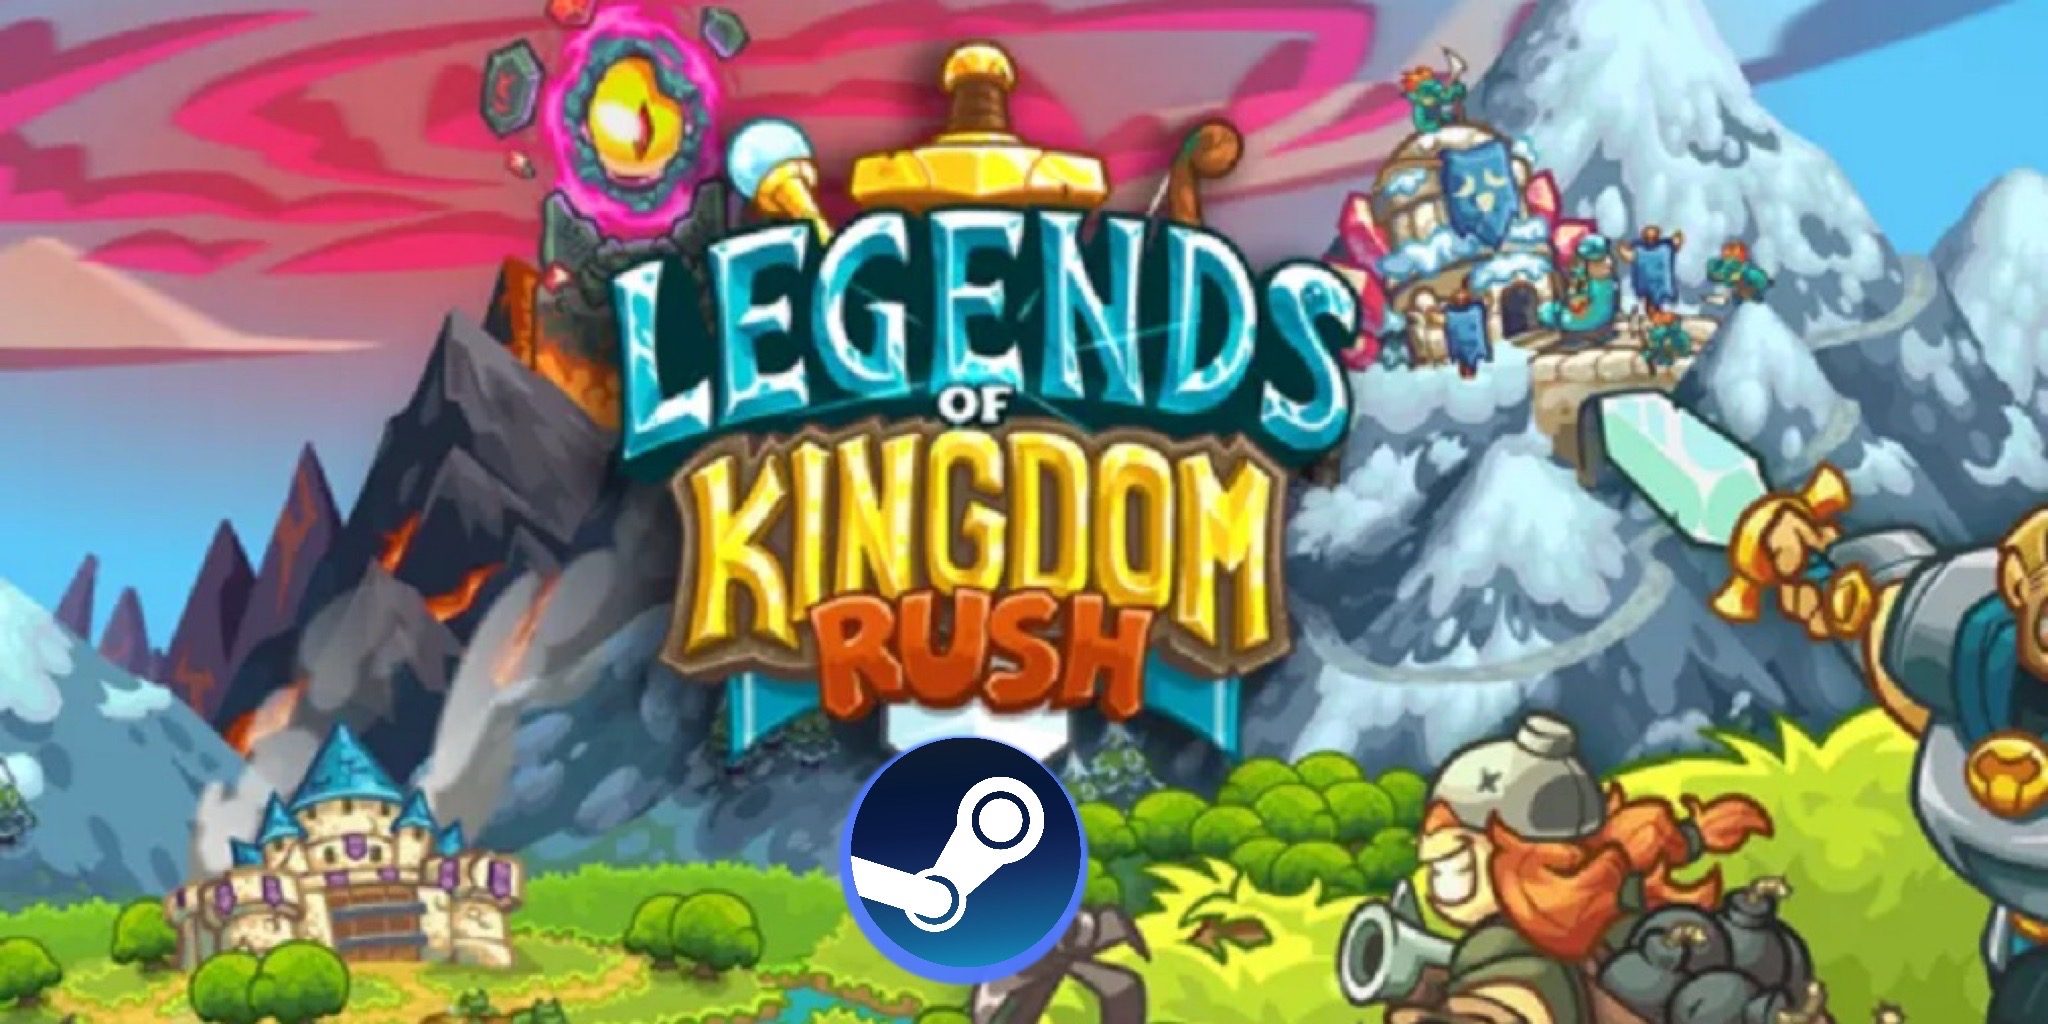 De populaire Tower Defense-game Legends of Kingdom Rush komt in juni 2022 naar pc via Steam